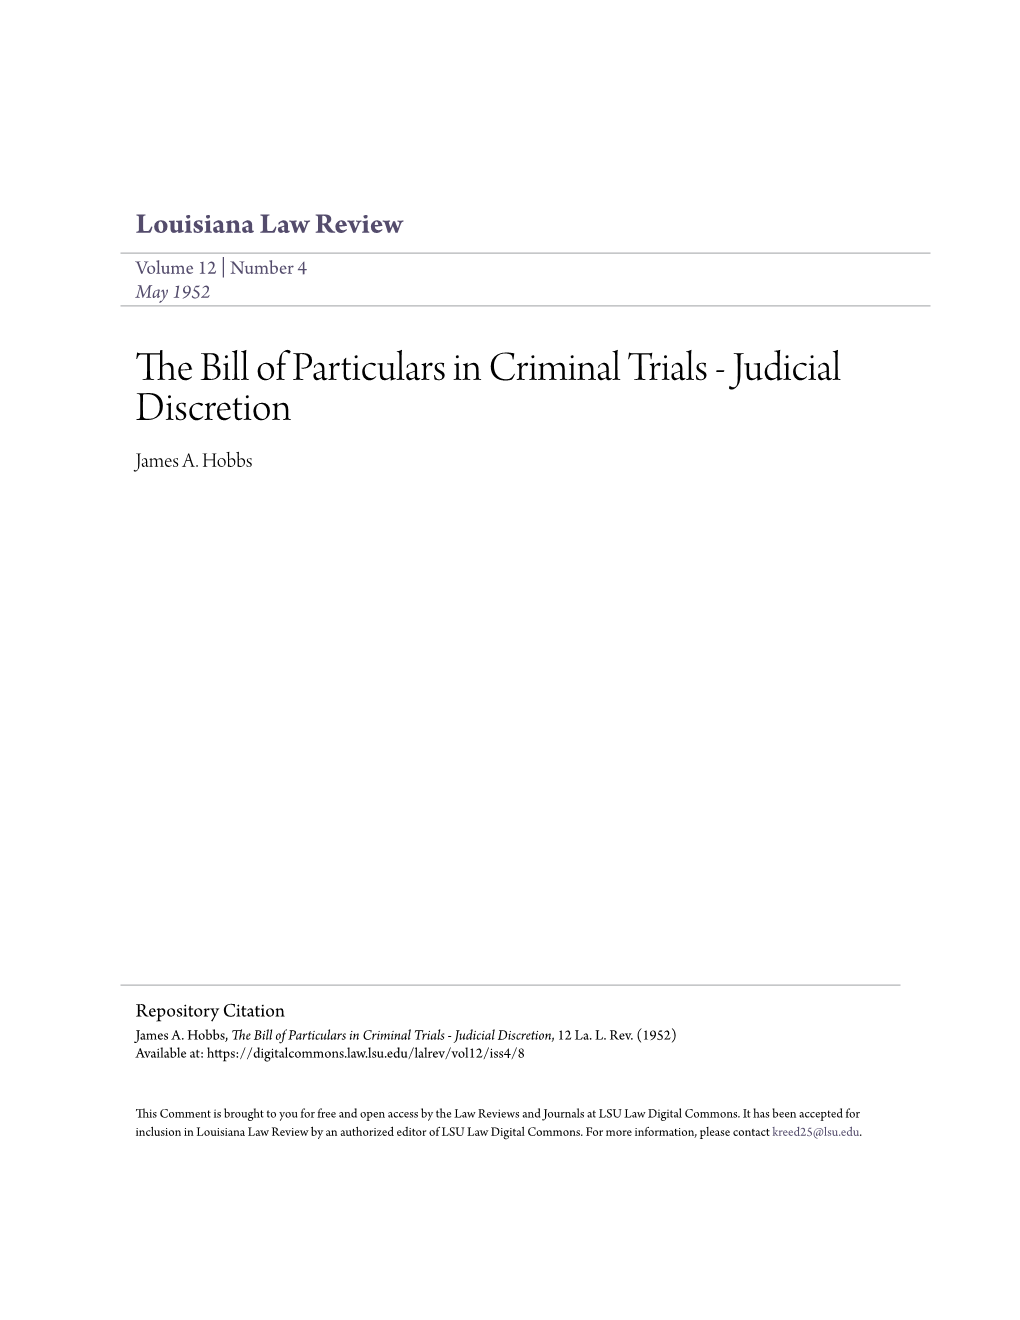 The Bill of Particulars in Criminal Trials - Judicial Discretion, 12 La